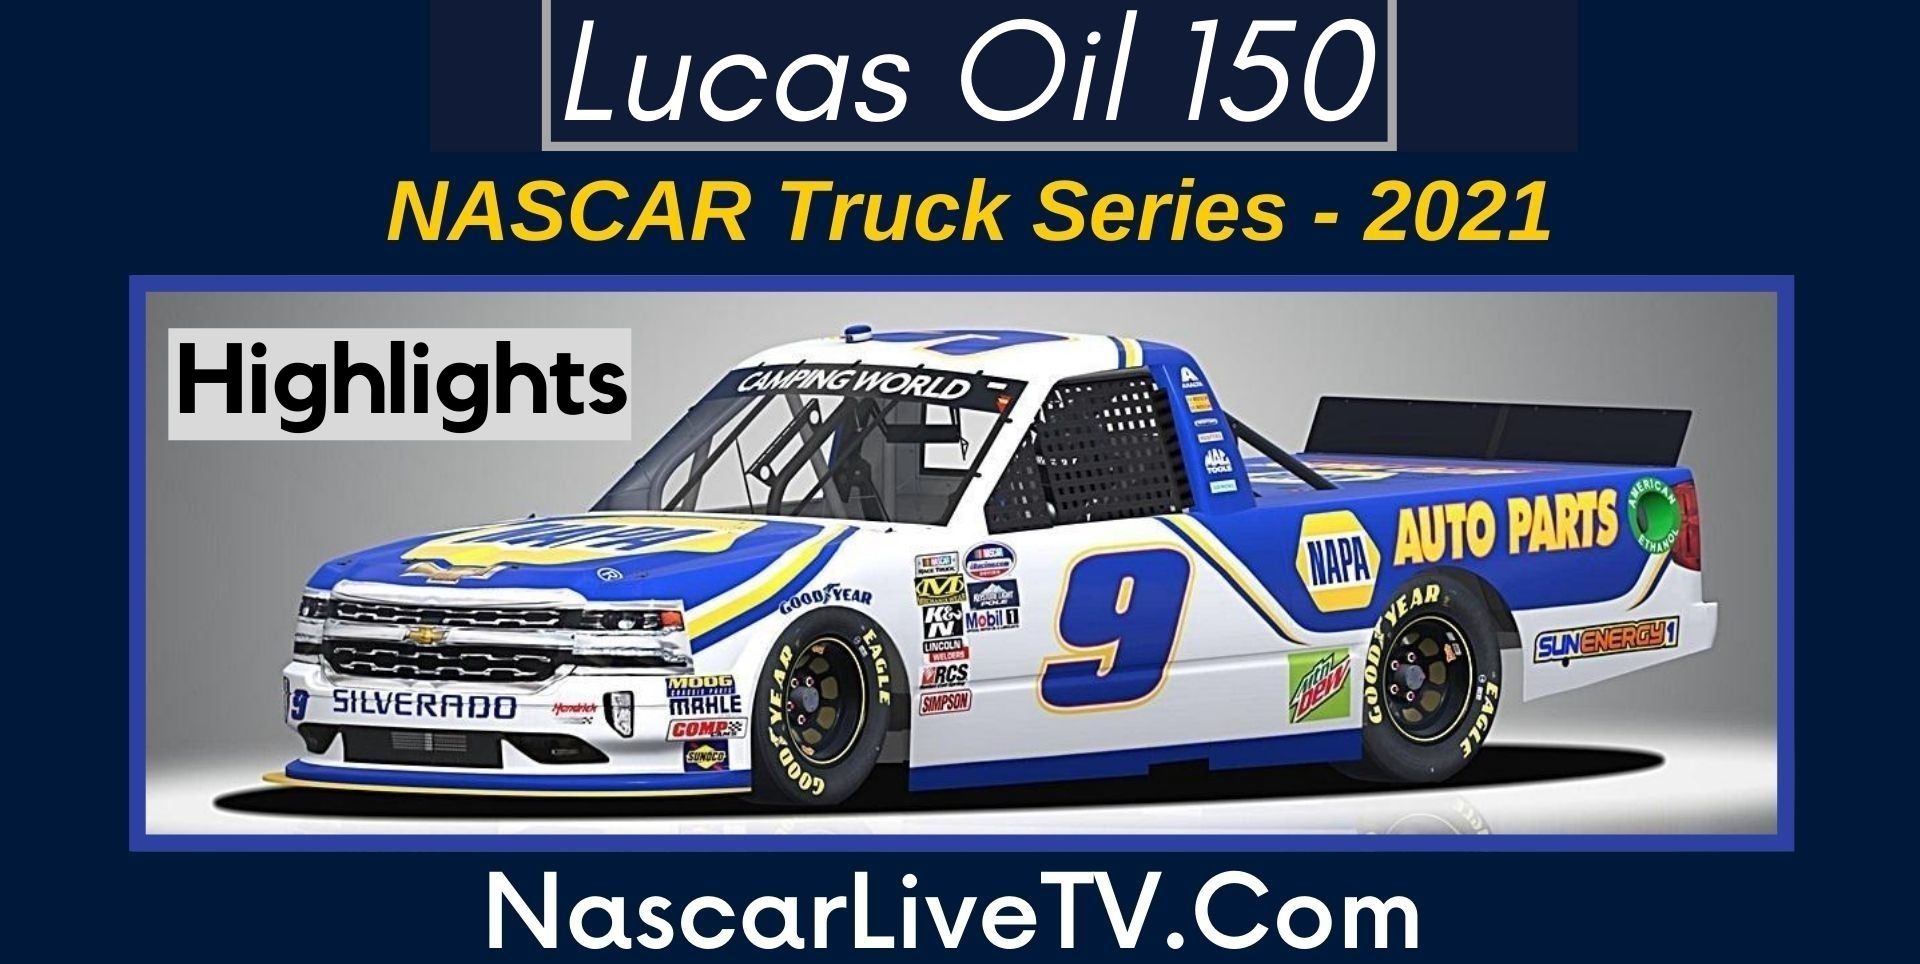 Lucas Oil 150 Highlights Nascar Truck Series 2021